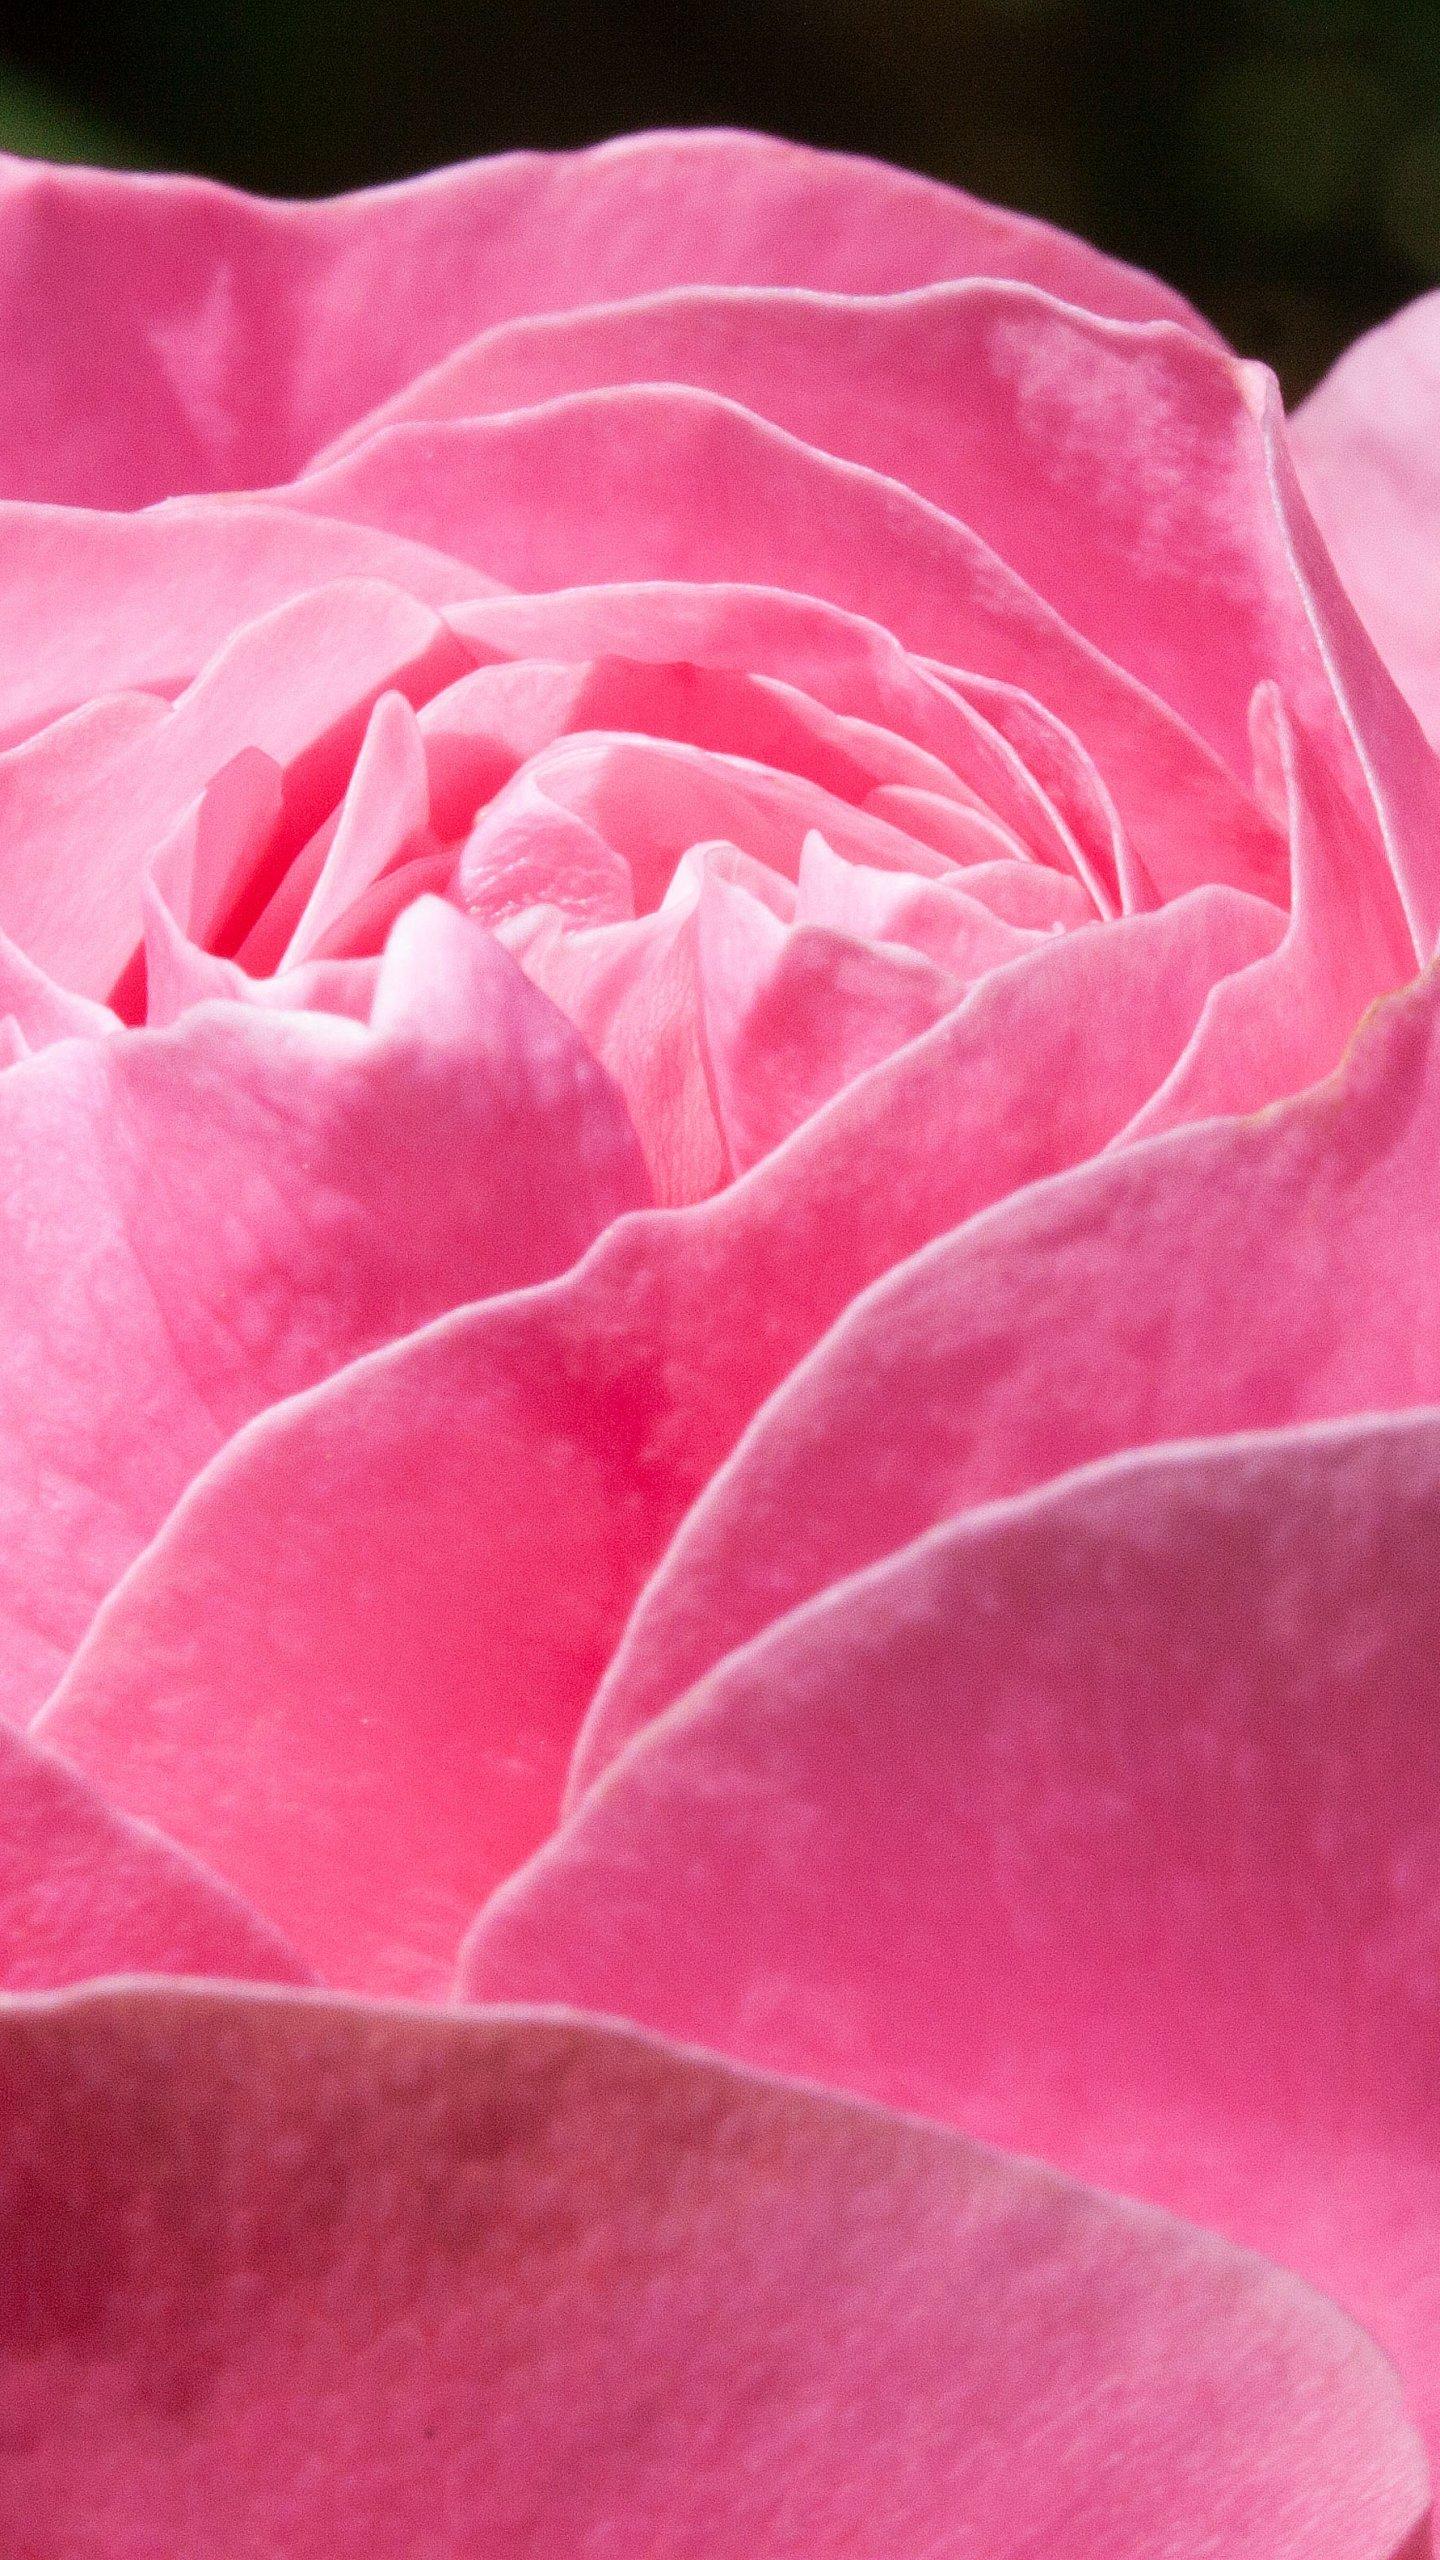 Pink Rose Wallpaper, Android & Desktop Background